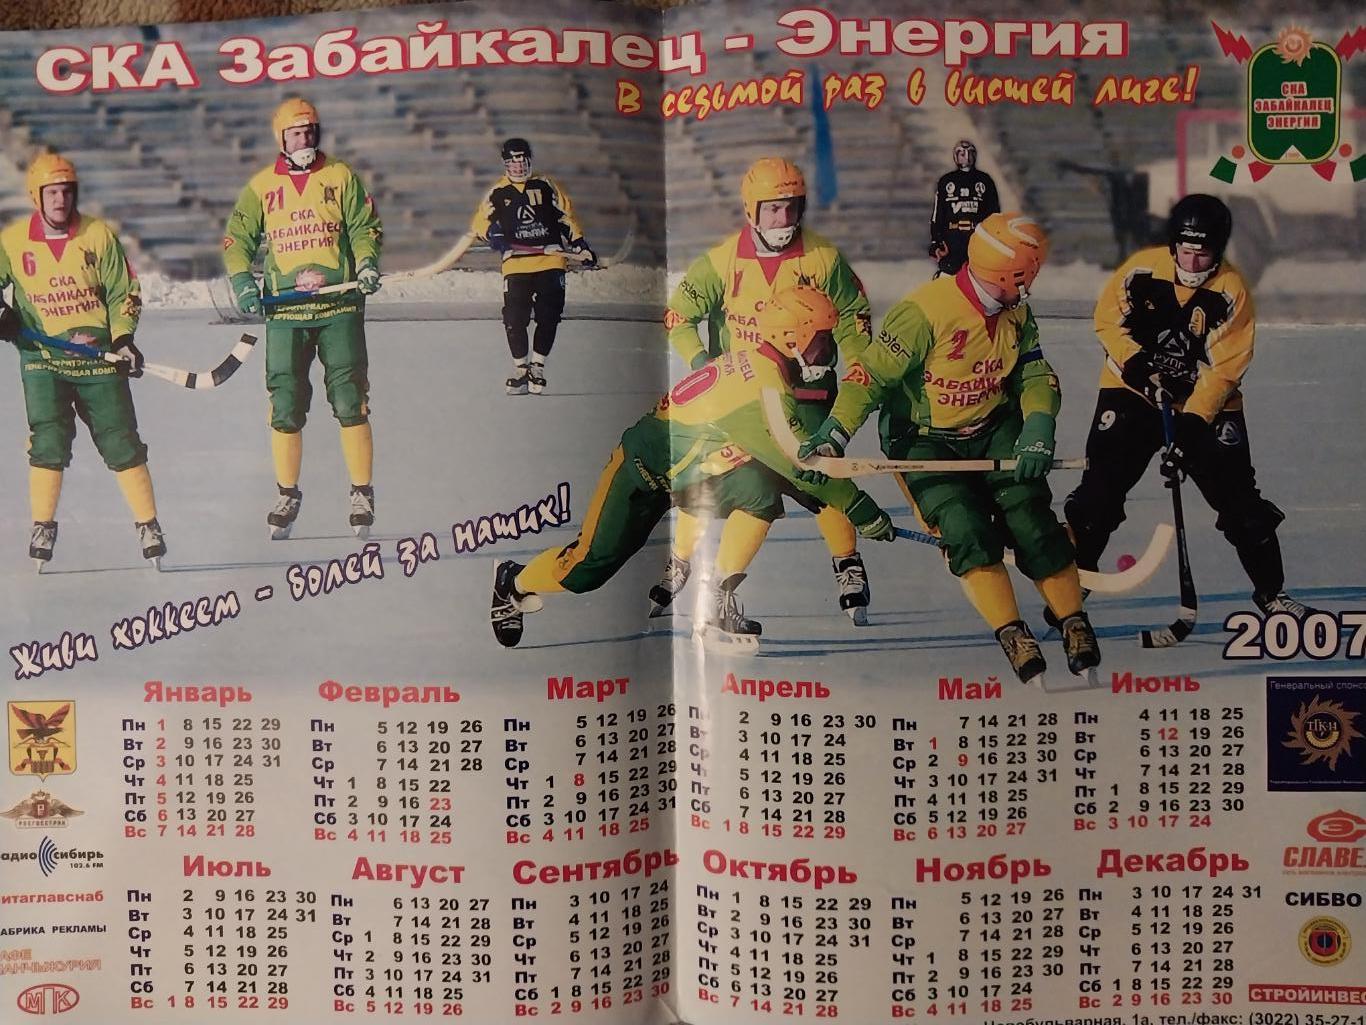 ХК СКА Забайкалец-Энергия, Чита, хоккей с мячом, 2007